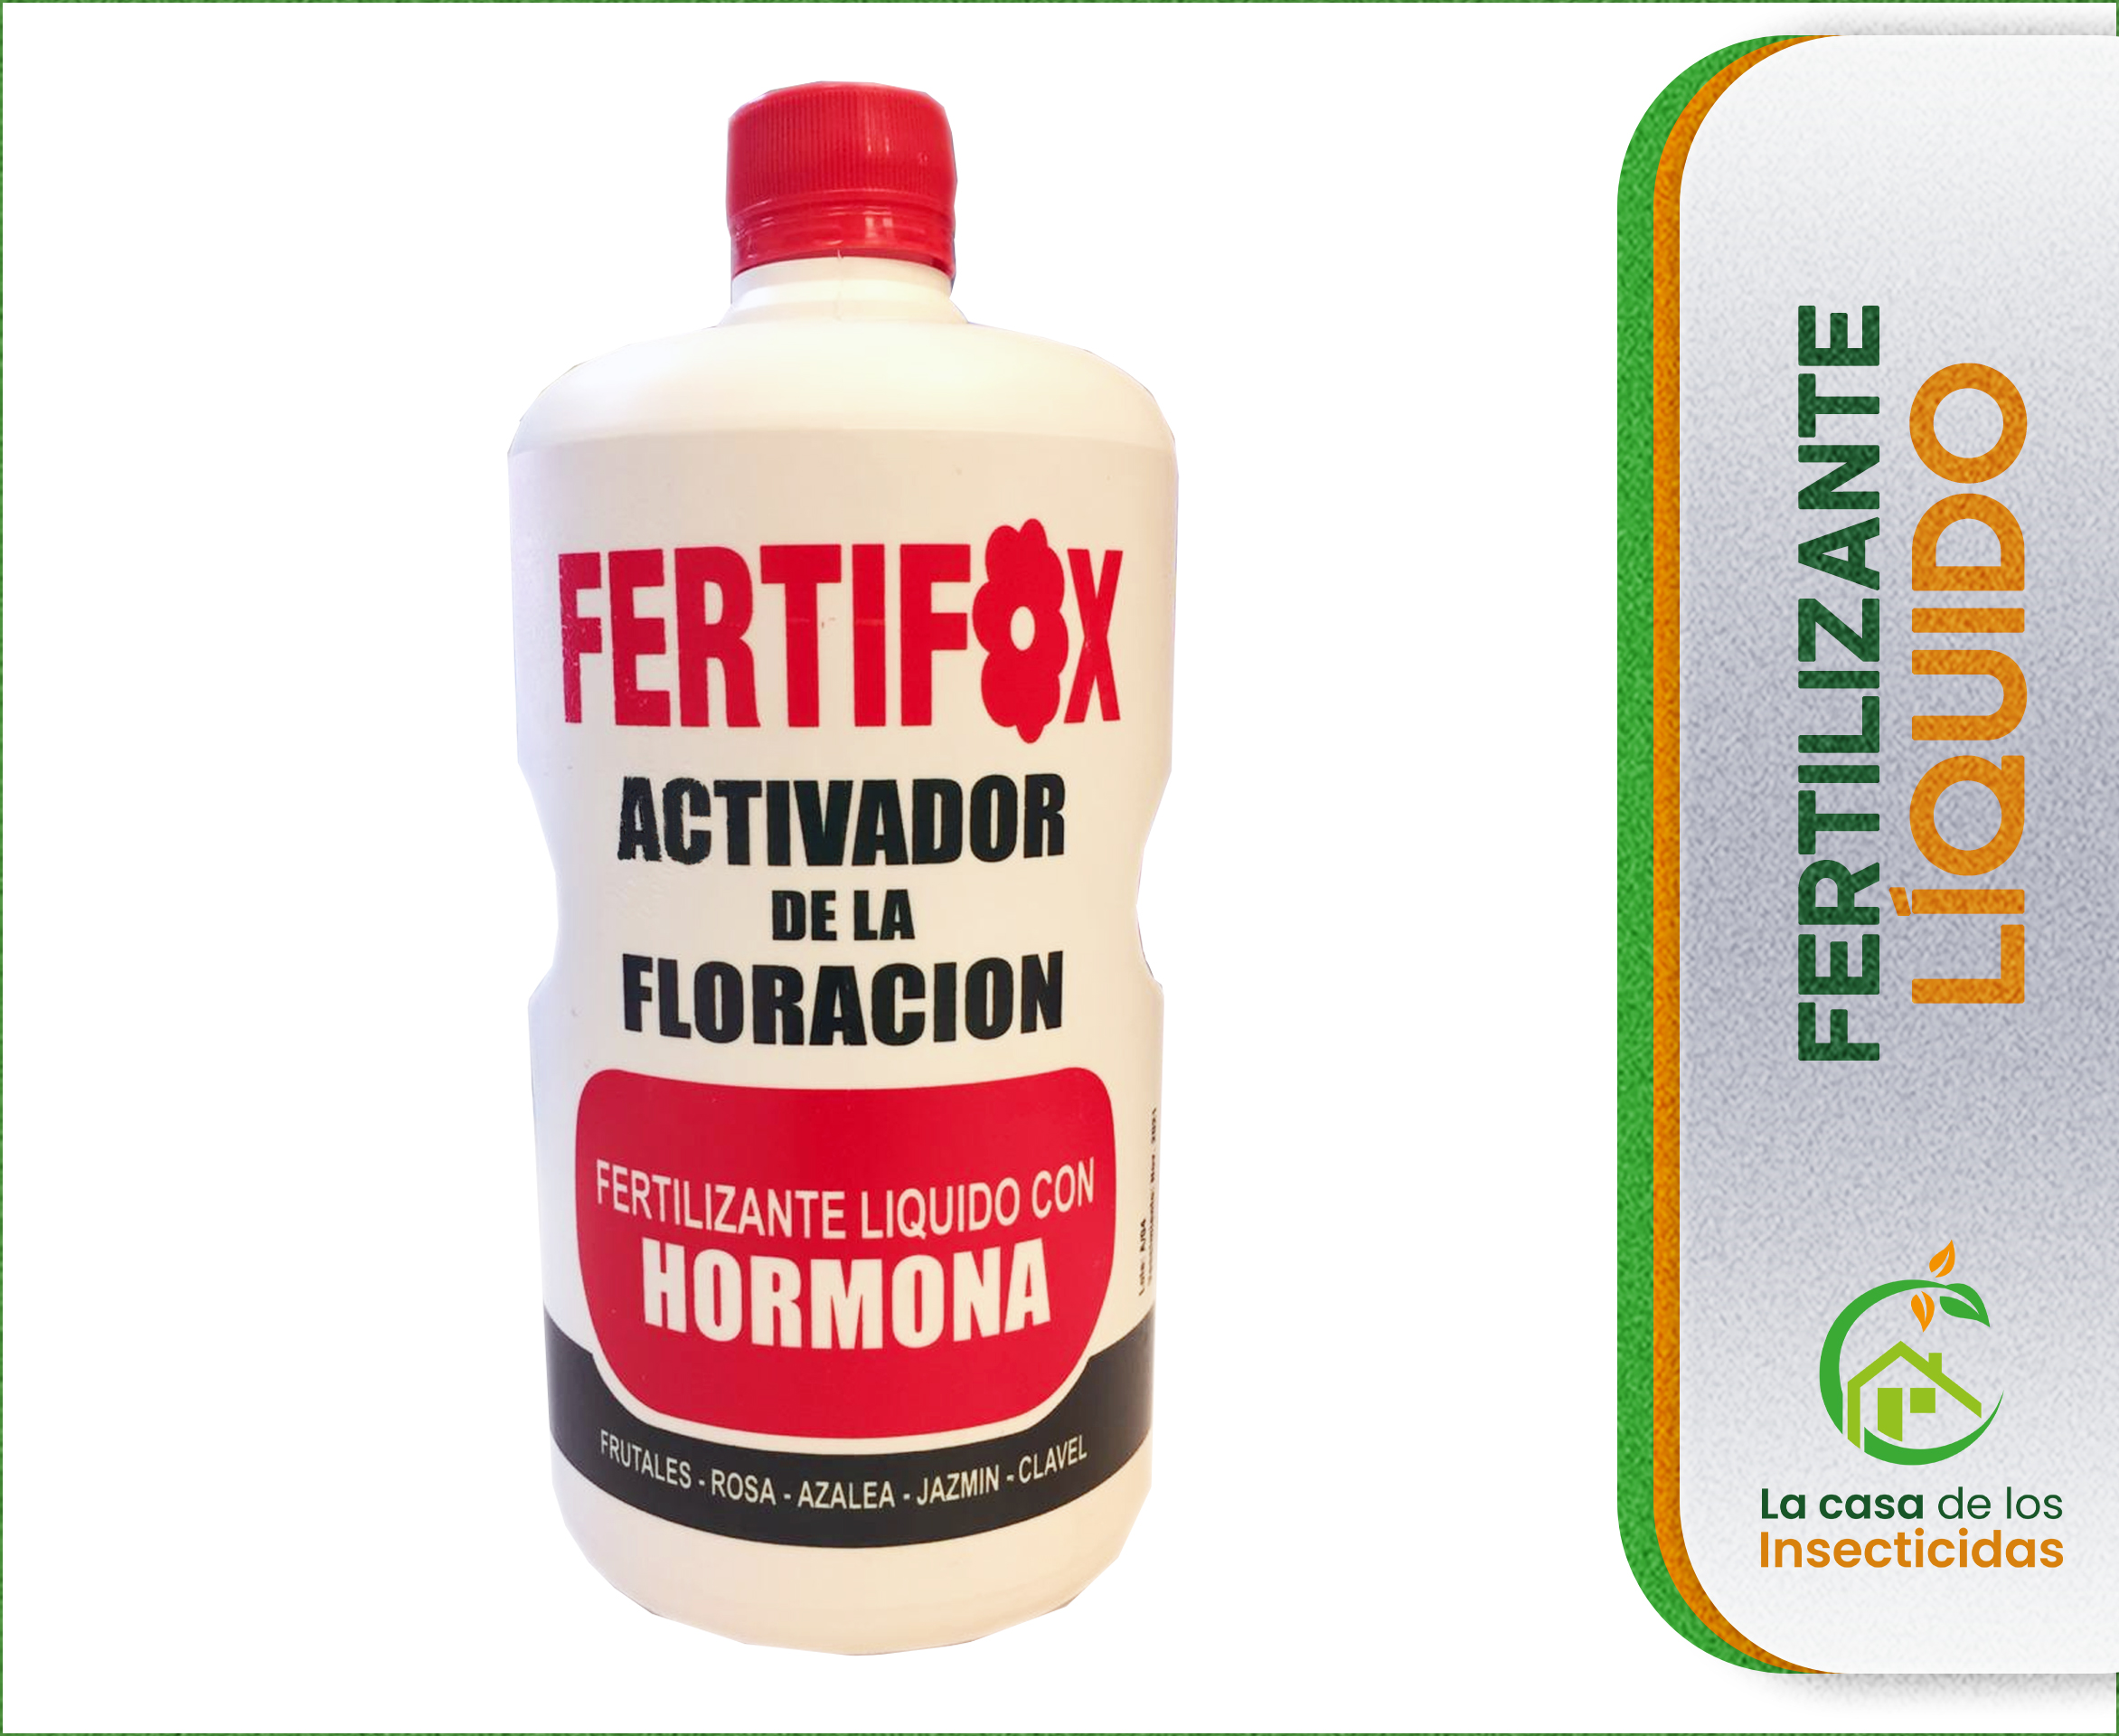 Fertifox Activador de la Floración 1 ltr.